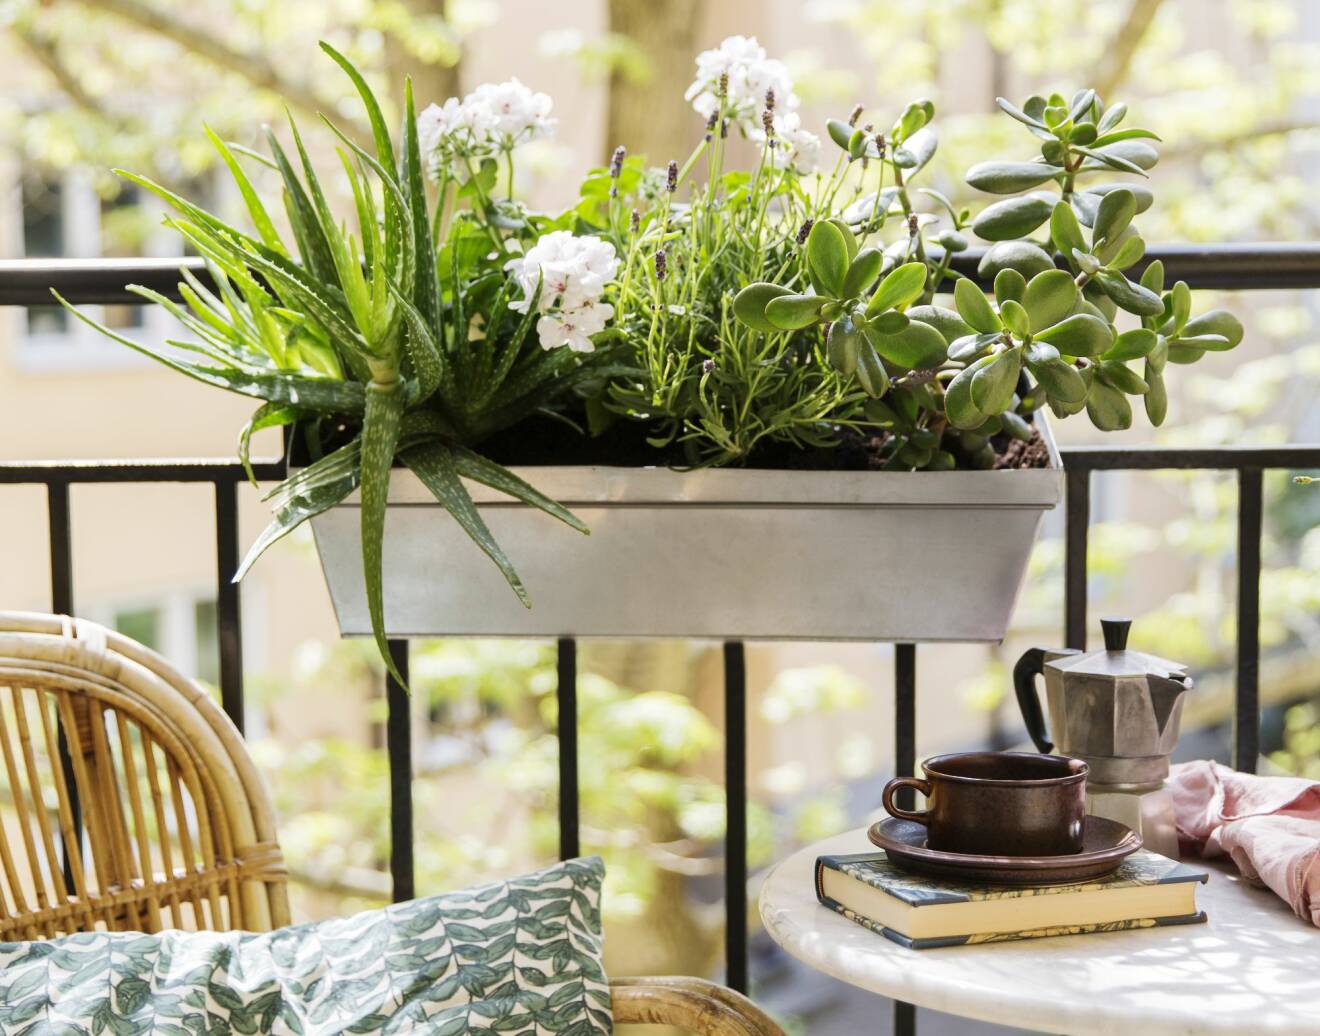 Balkonglåda med växter som kräver minimalt arbete.